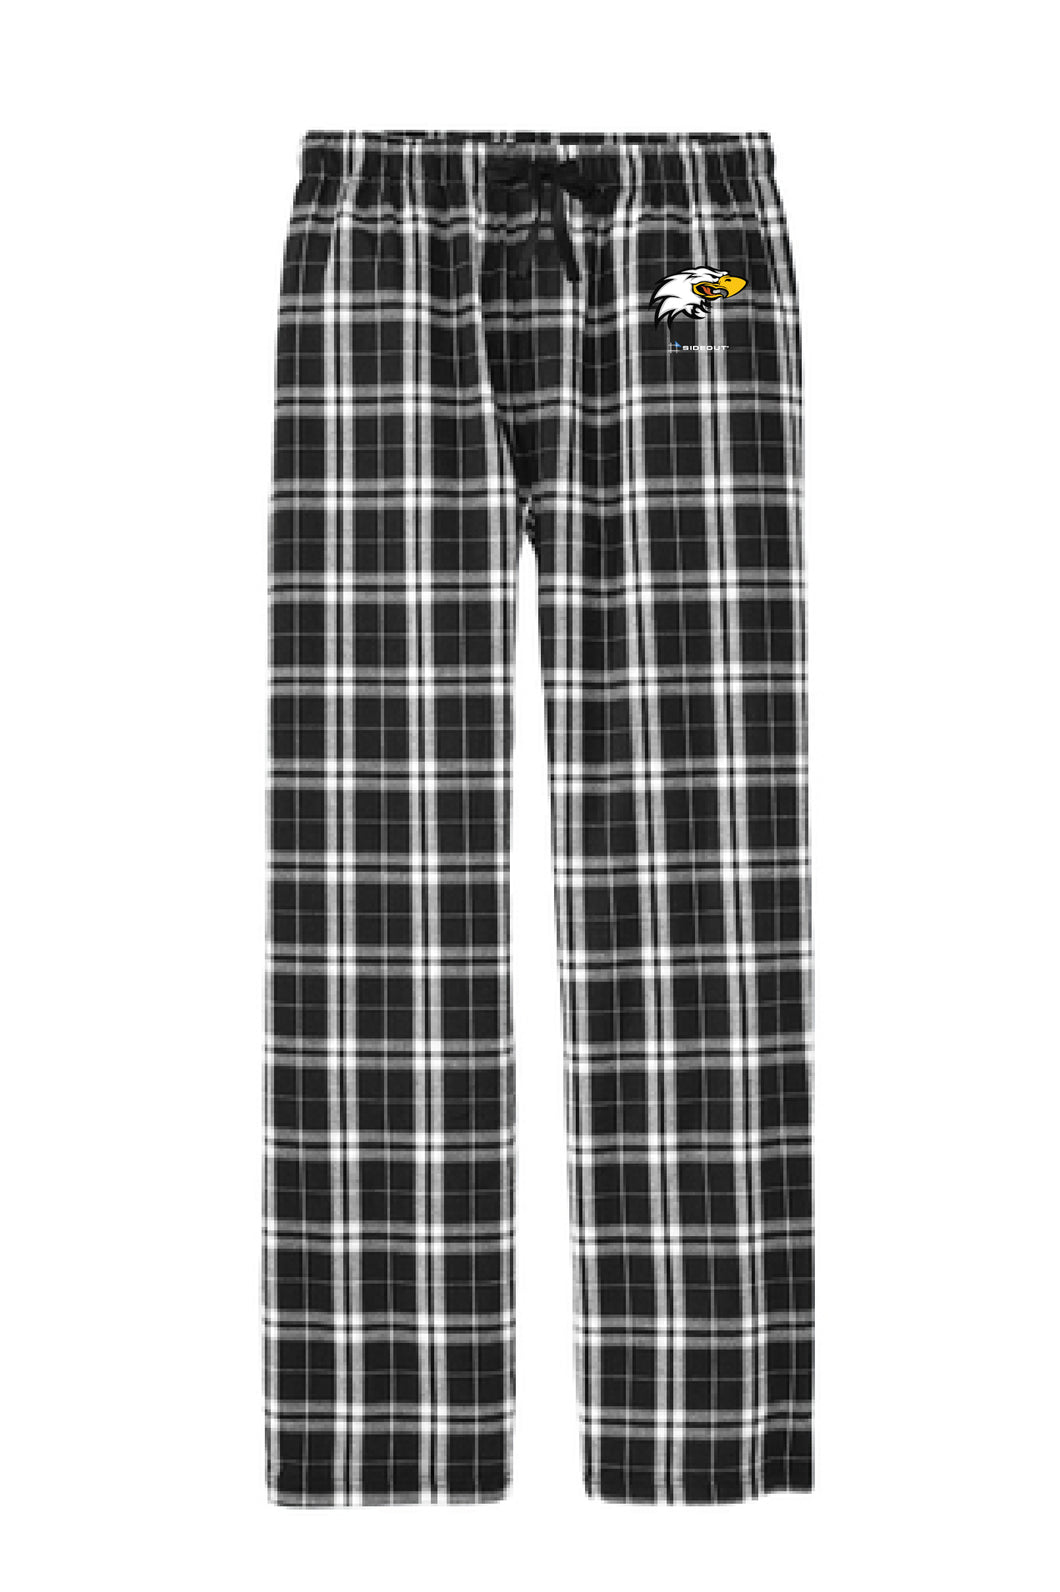 Tier One Pajama Pant Black & White